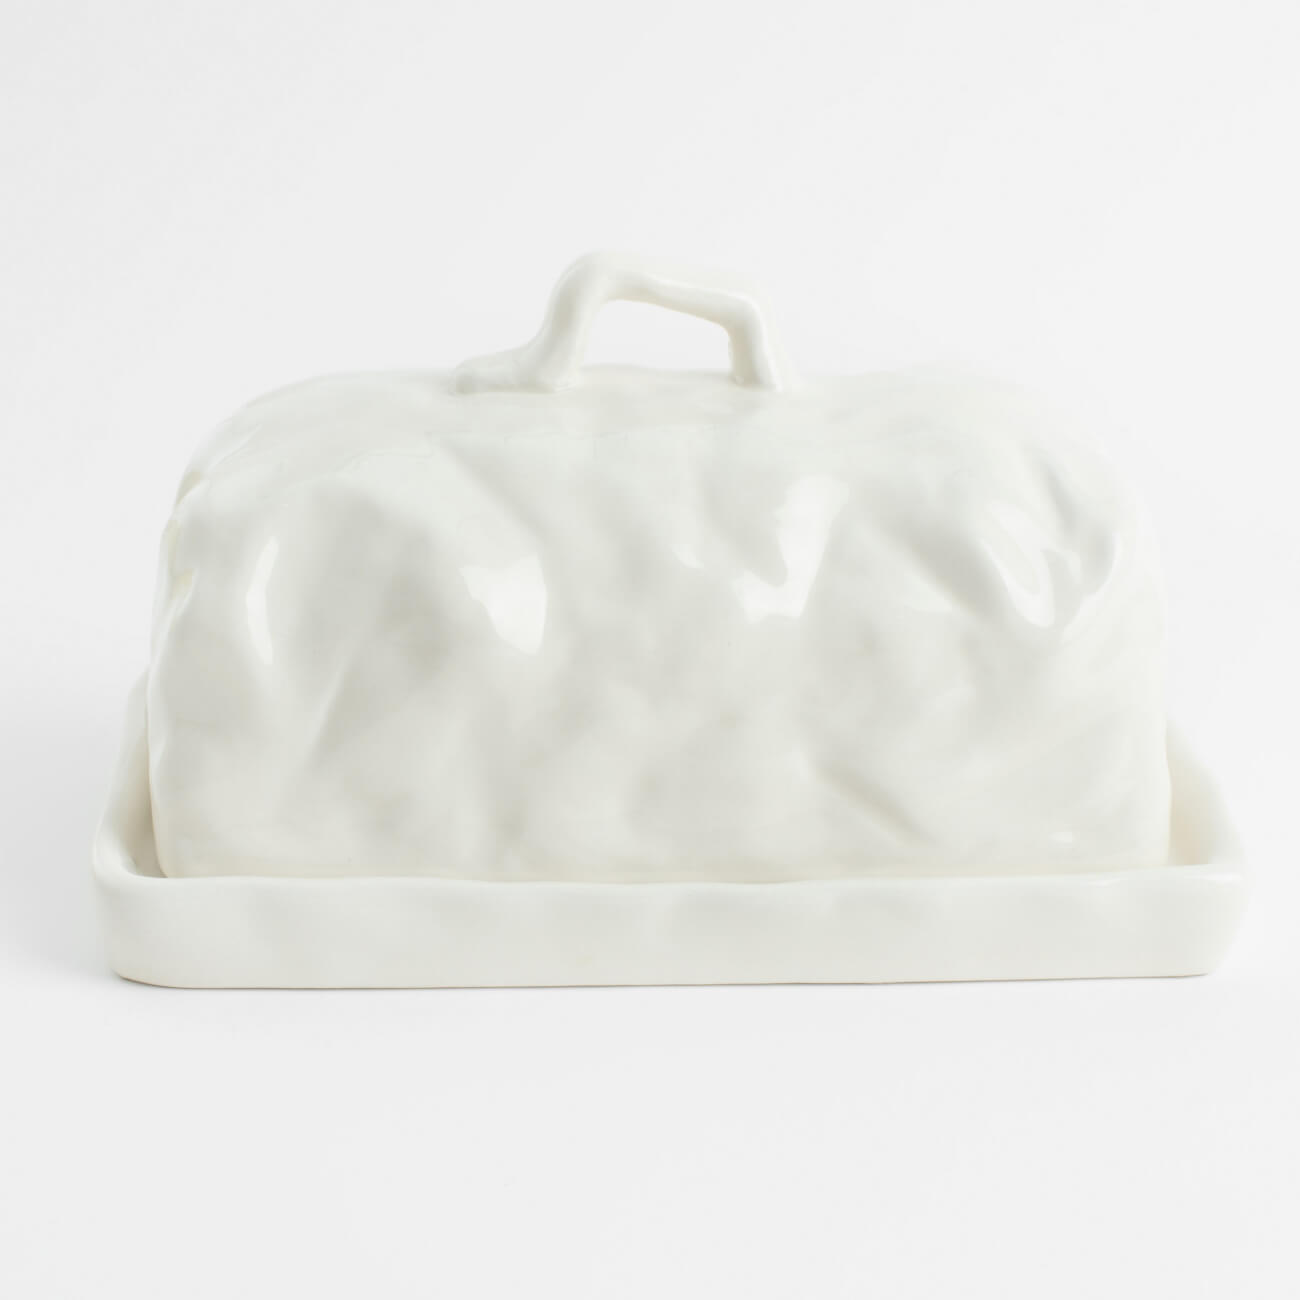 Масленка, 18 см, керамика, прямоугольная, молочная, Мятый эффект, Crumple кефир молочная культура 3 2 4 5 % бзмж 500 гр